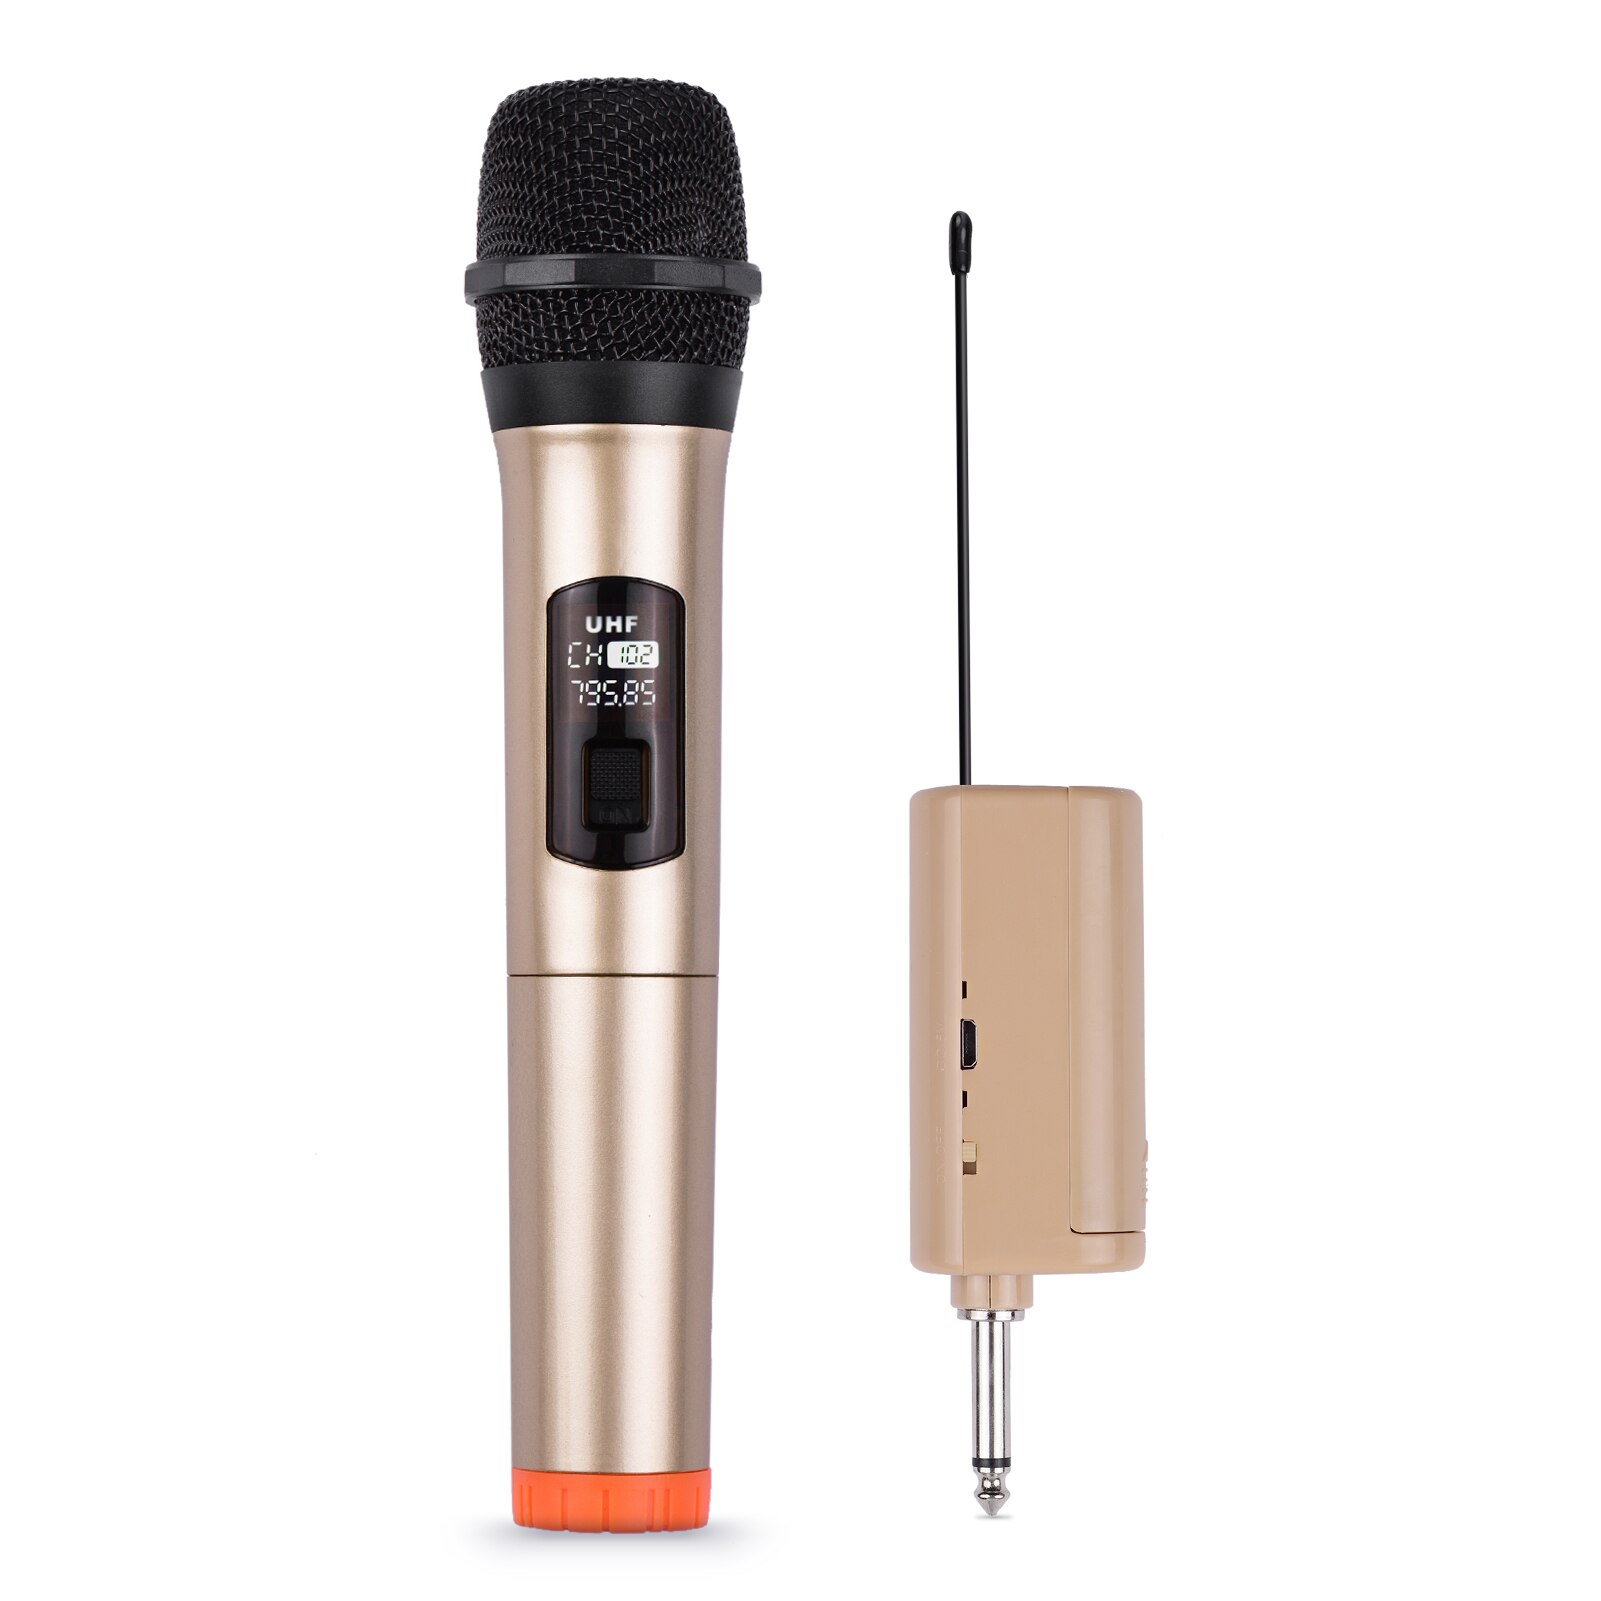 Handheld Draadloze Microfoon Uhf Dynamische Microfoon Met Draagbare Mini Ontvanger 6.35Mm Plug Compatibel Met Speaker Karaoke Systeem Thuis